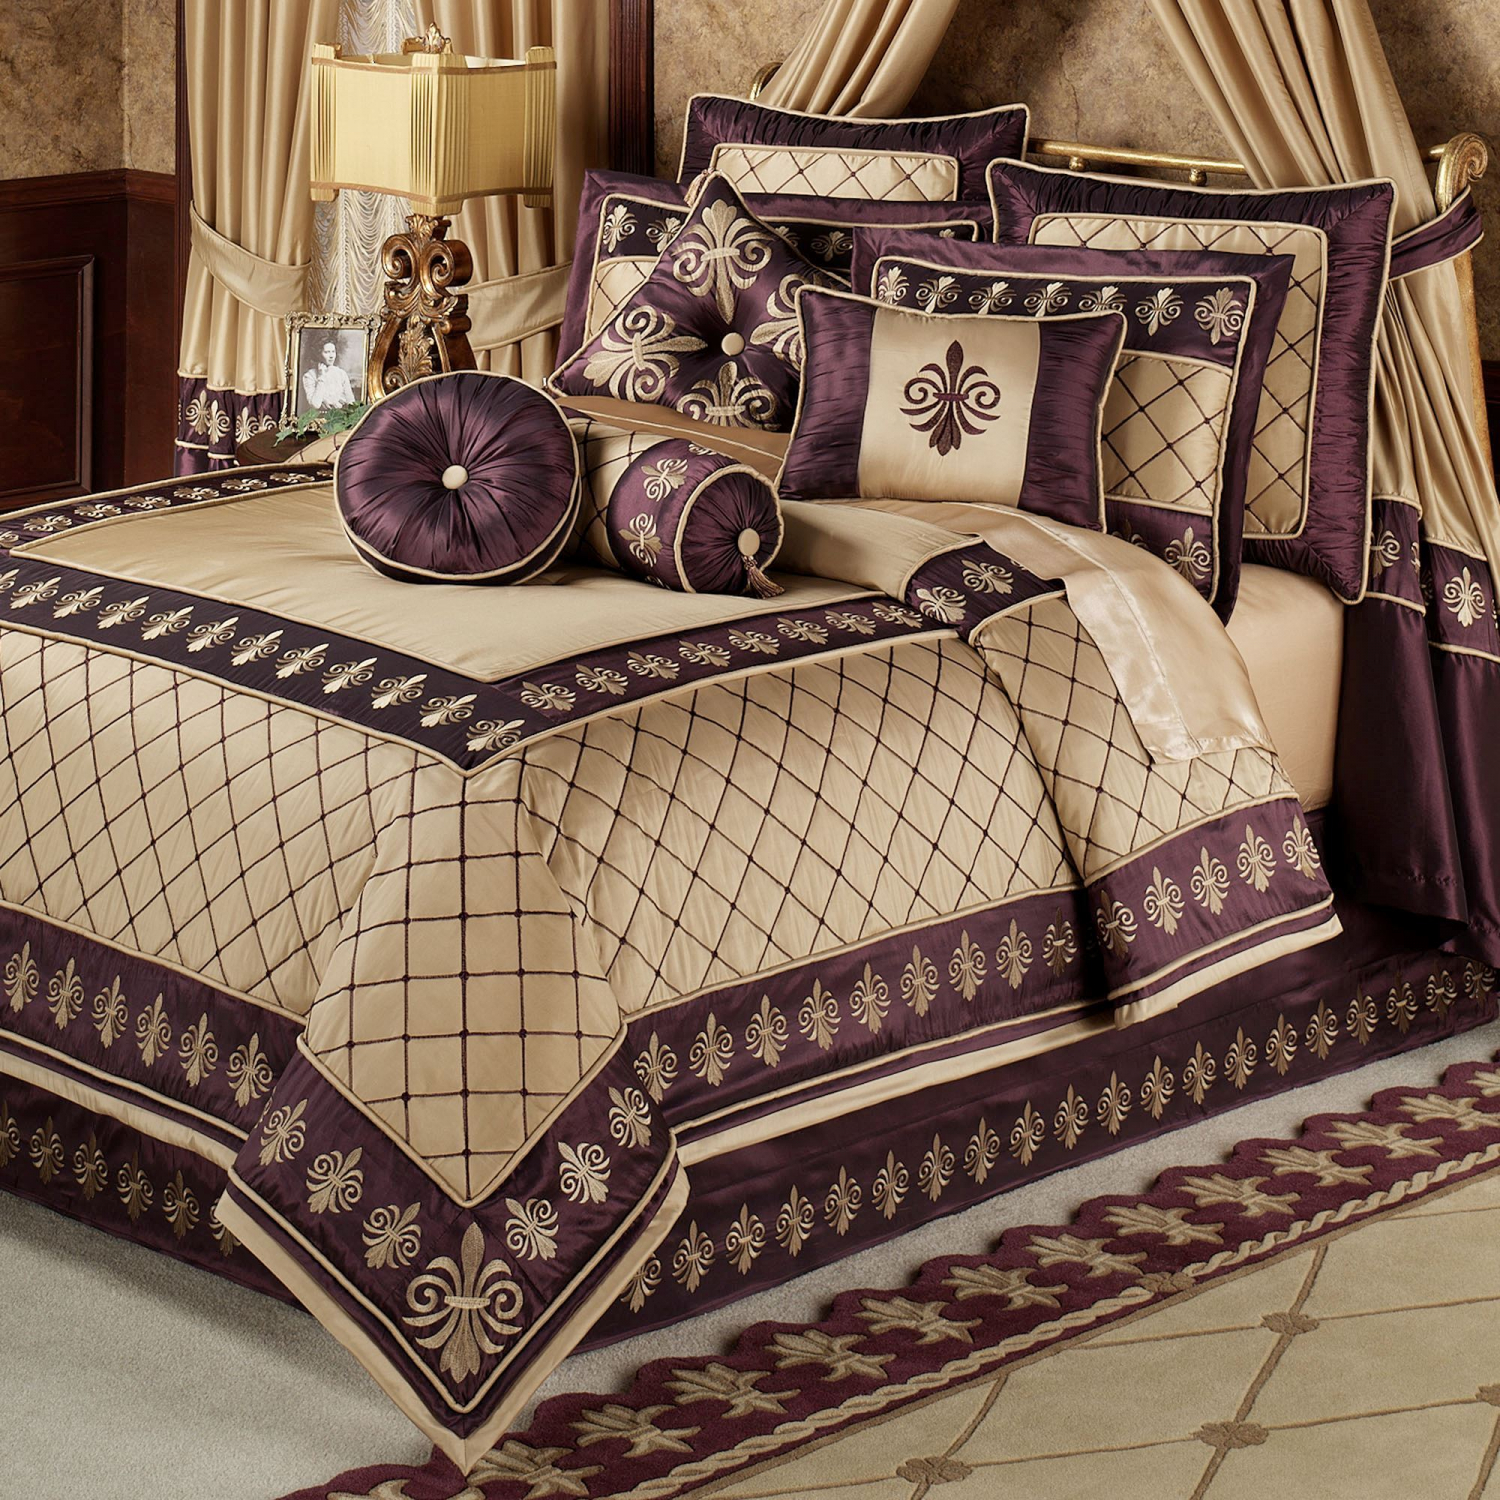 Турецкий стиль покрывало на кровать